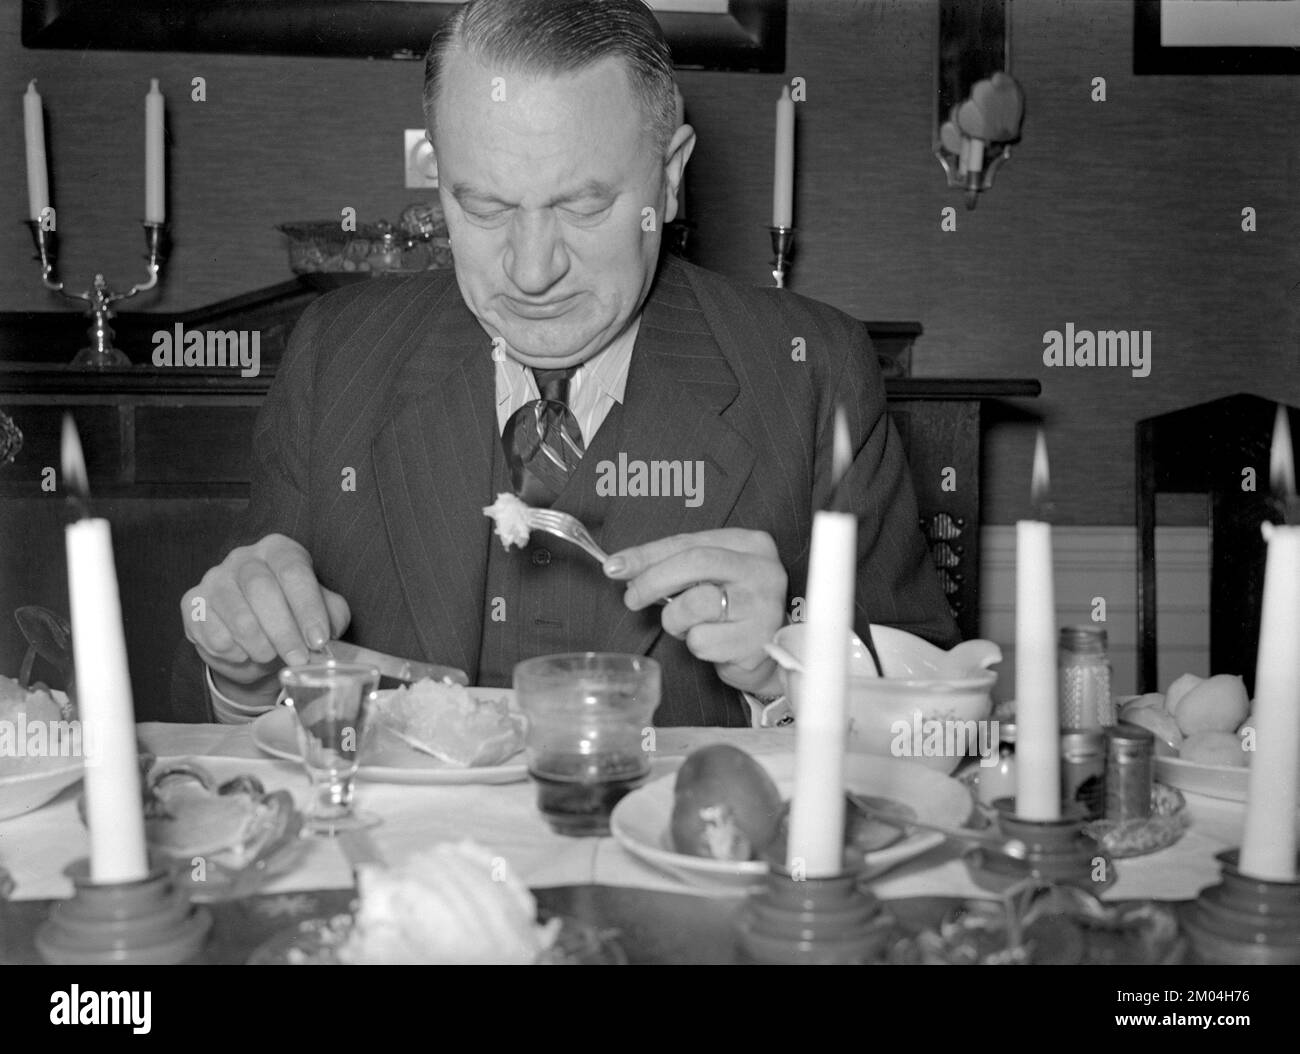 zu weihnachten in den 1940er. Ein Mann isst zu weihnachten, und seinem Gesichtsausdruck nach ist das Gericht nicht nach seinem Geschmack. Schweden dezember 1940 Kristoffersson 42-8 Stockfoto